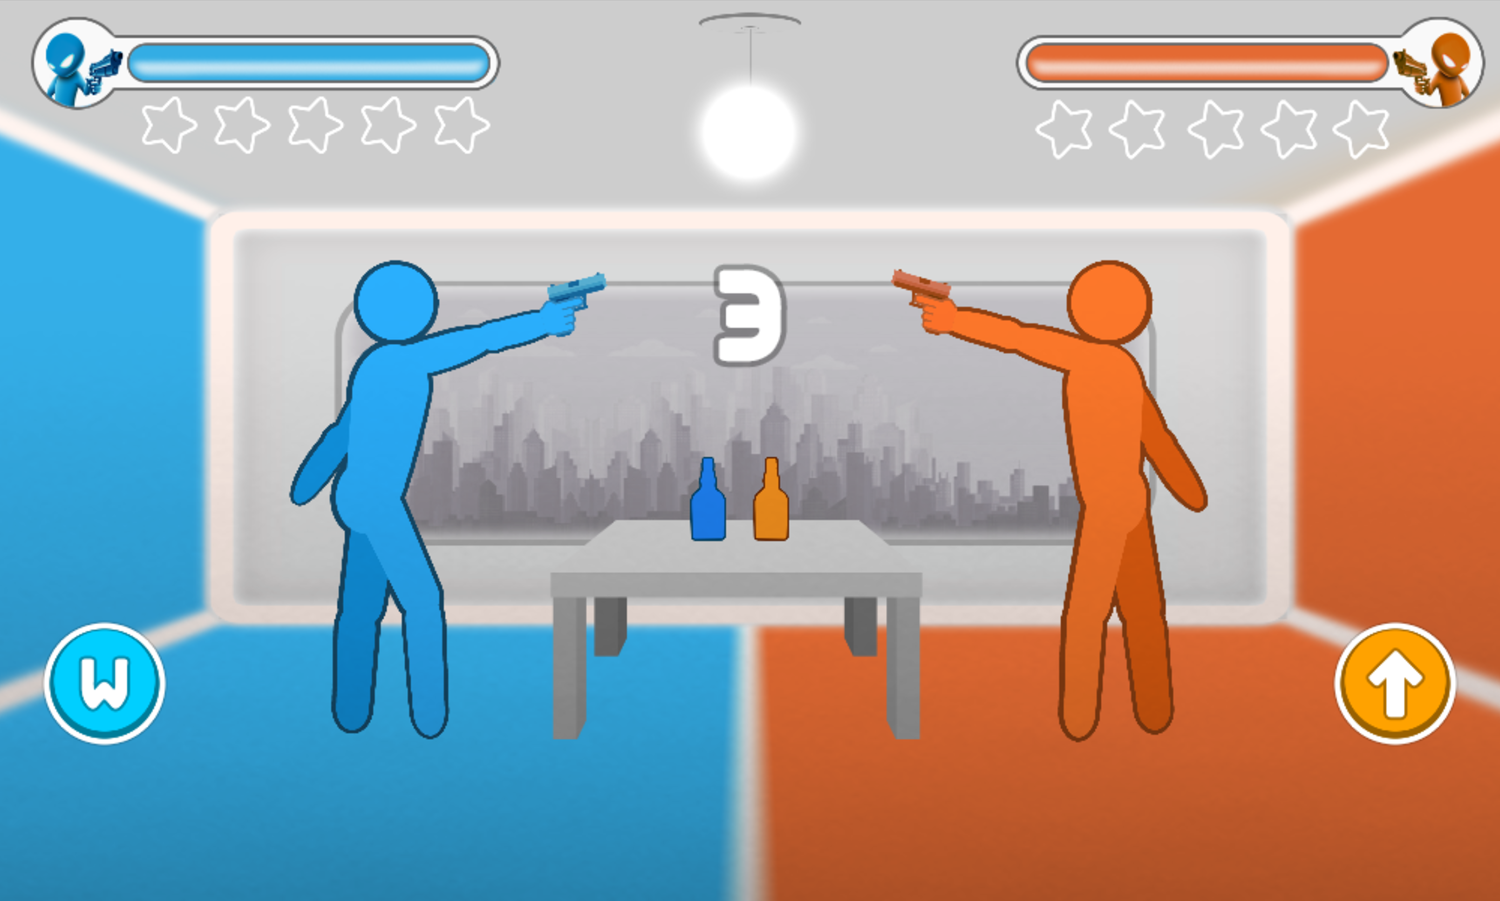 Drunken Duel Game 2 Player Mode Screen Screenshot.